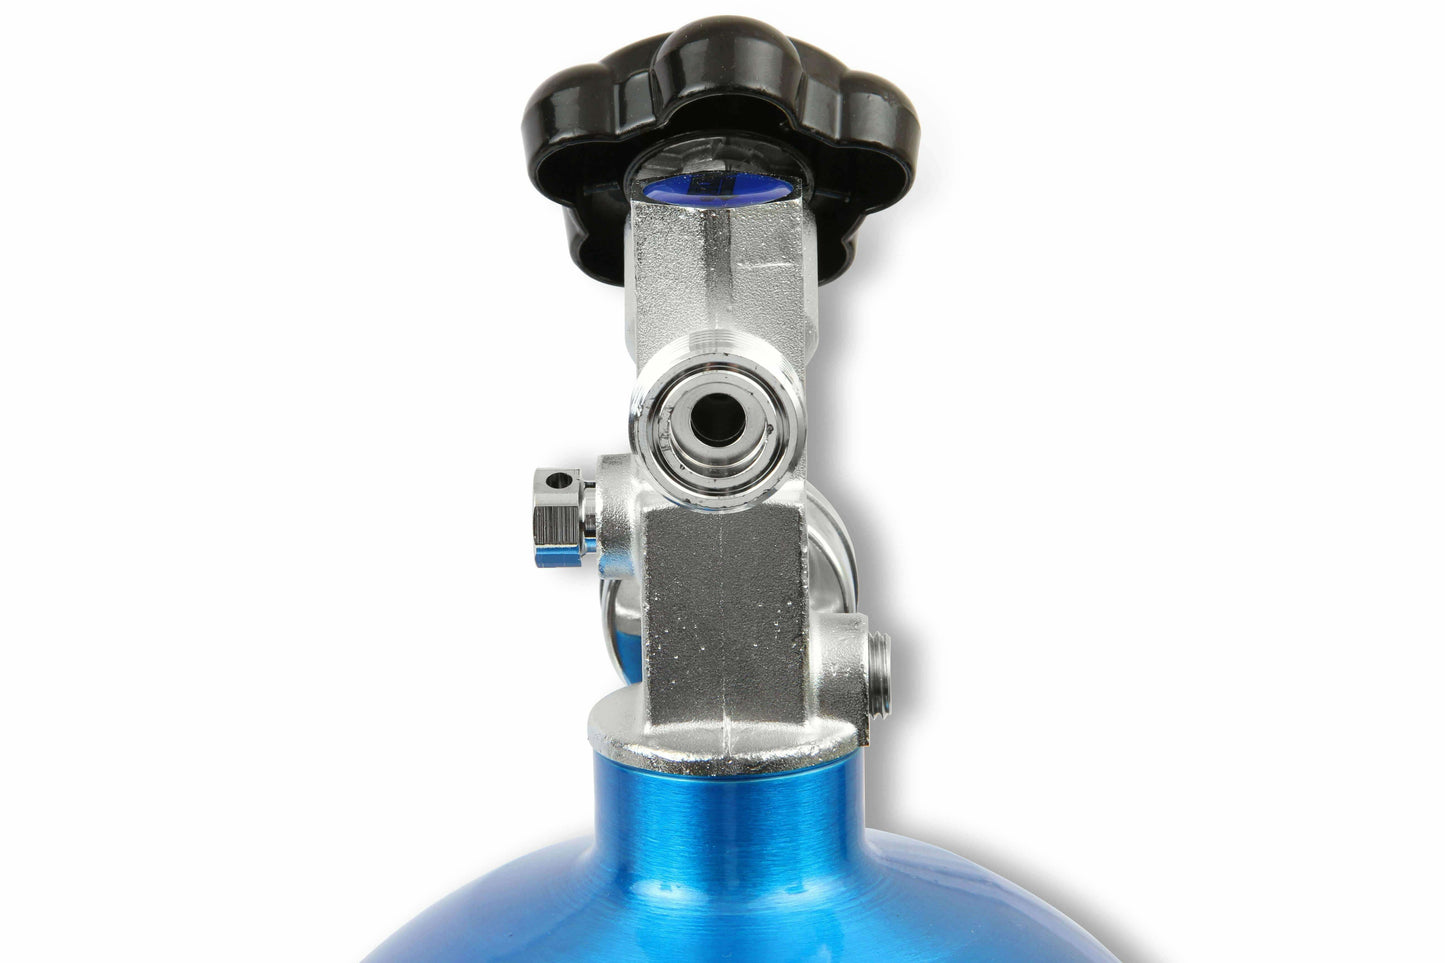 NOS 14745NOS 10LB Electric Blue Nitrous Bottle Universal- 10LB Bottle